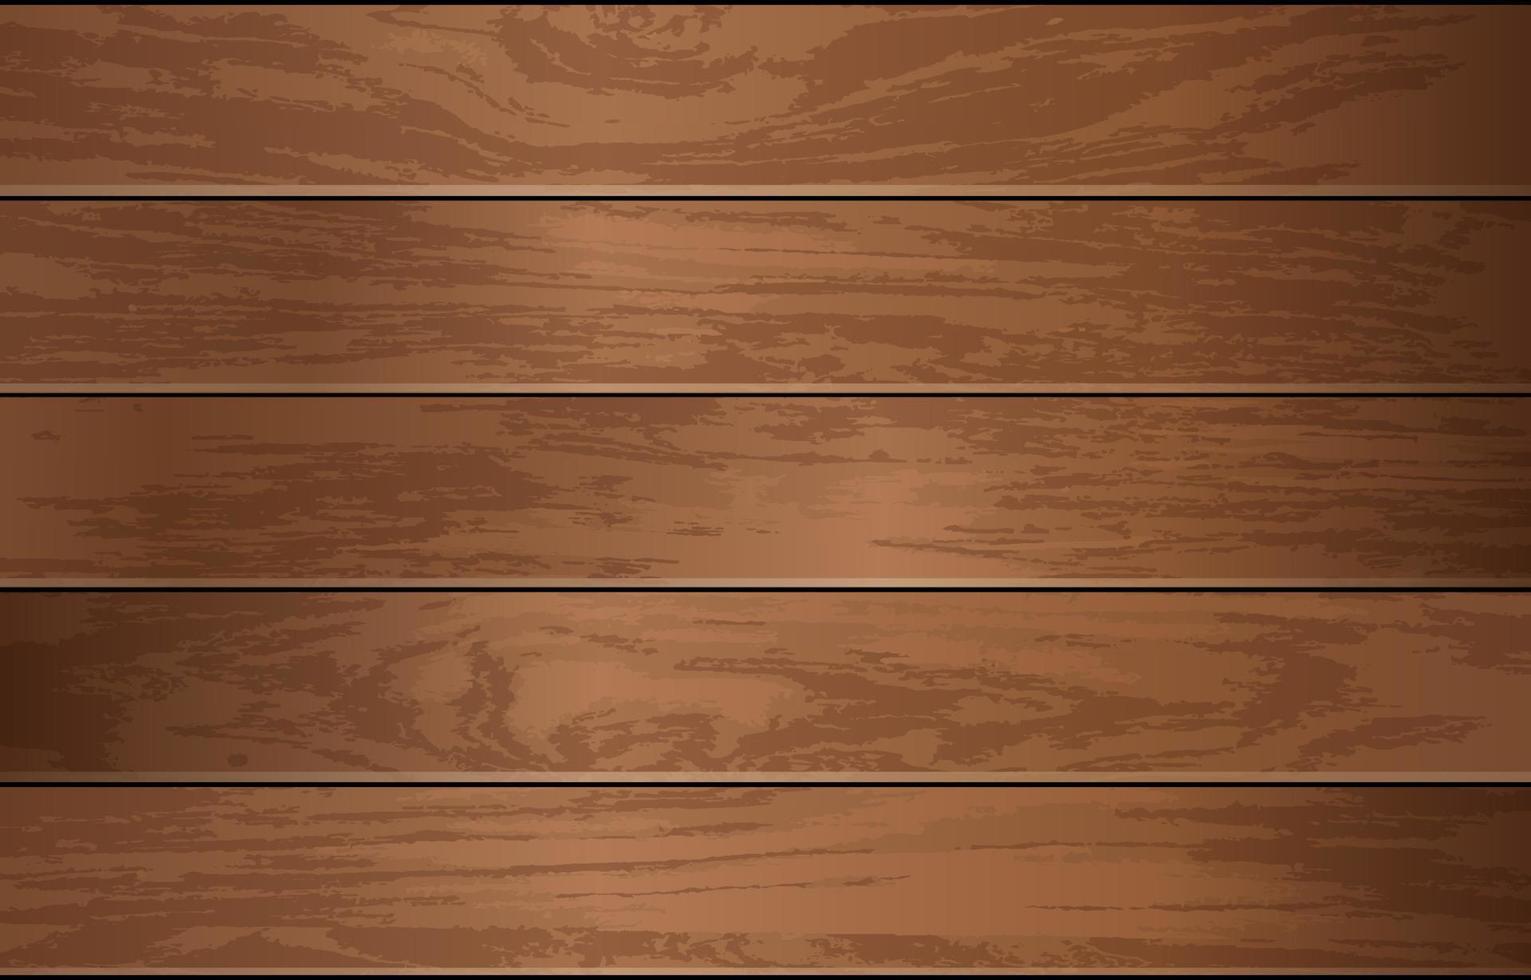 Wood Rustic Texture Concept vector